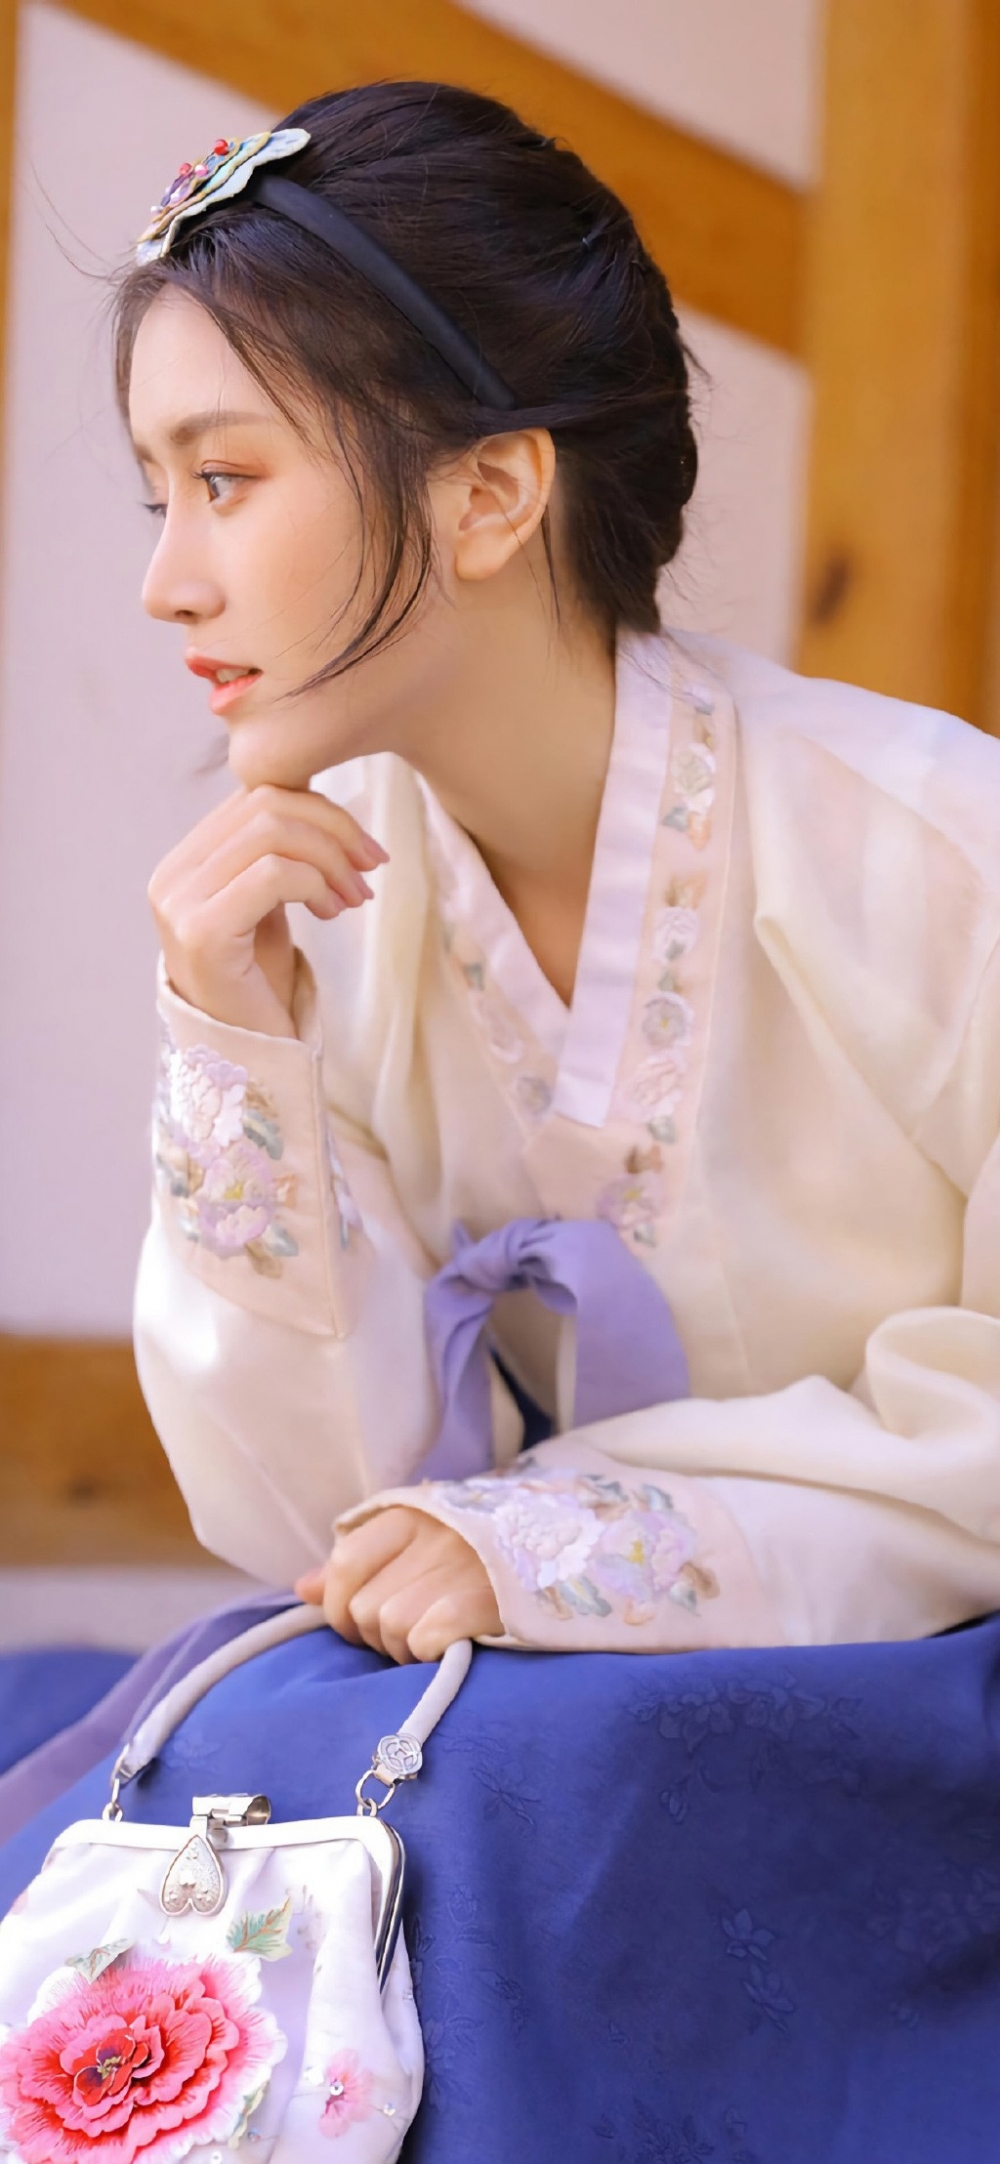 穿着汉服的日韩美女清美丽臀位图片